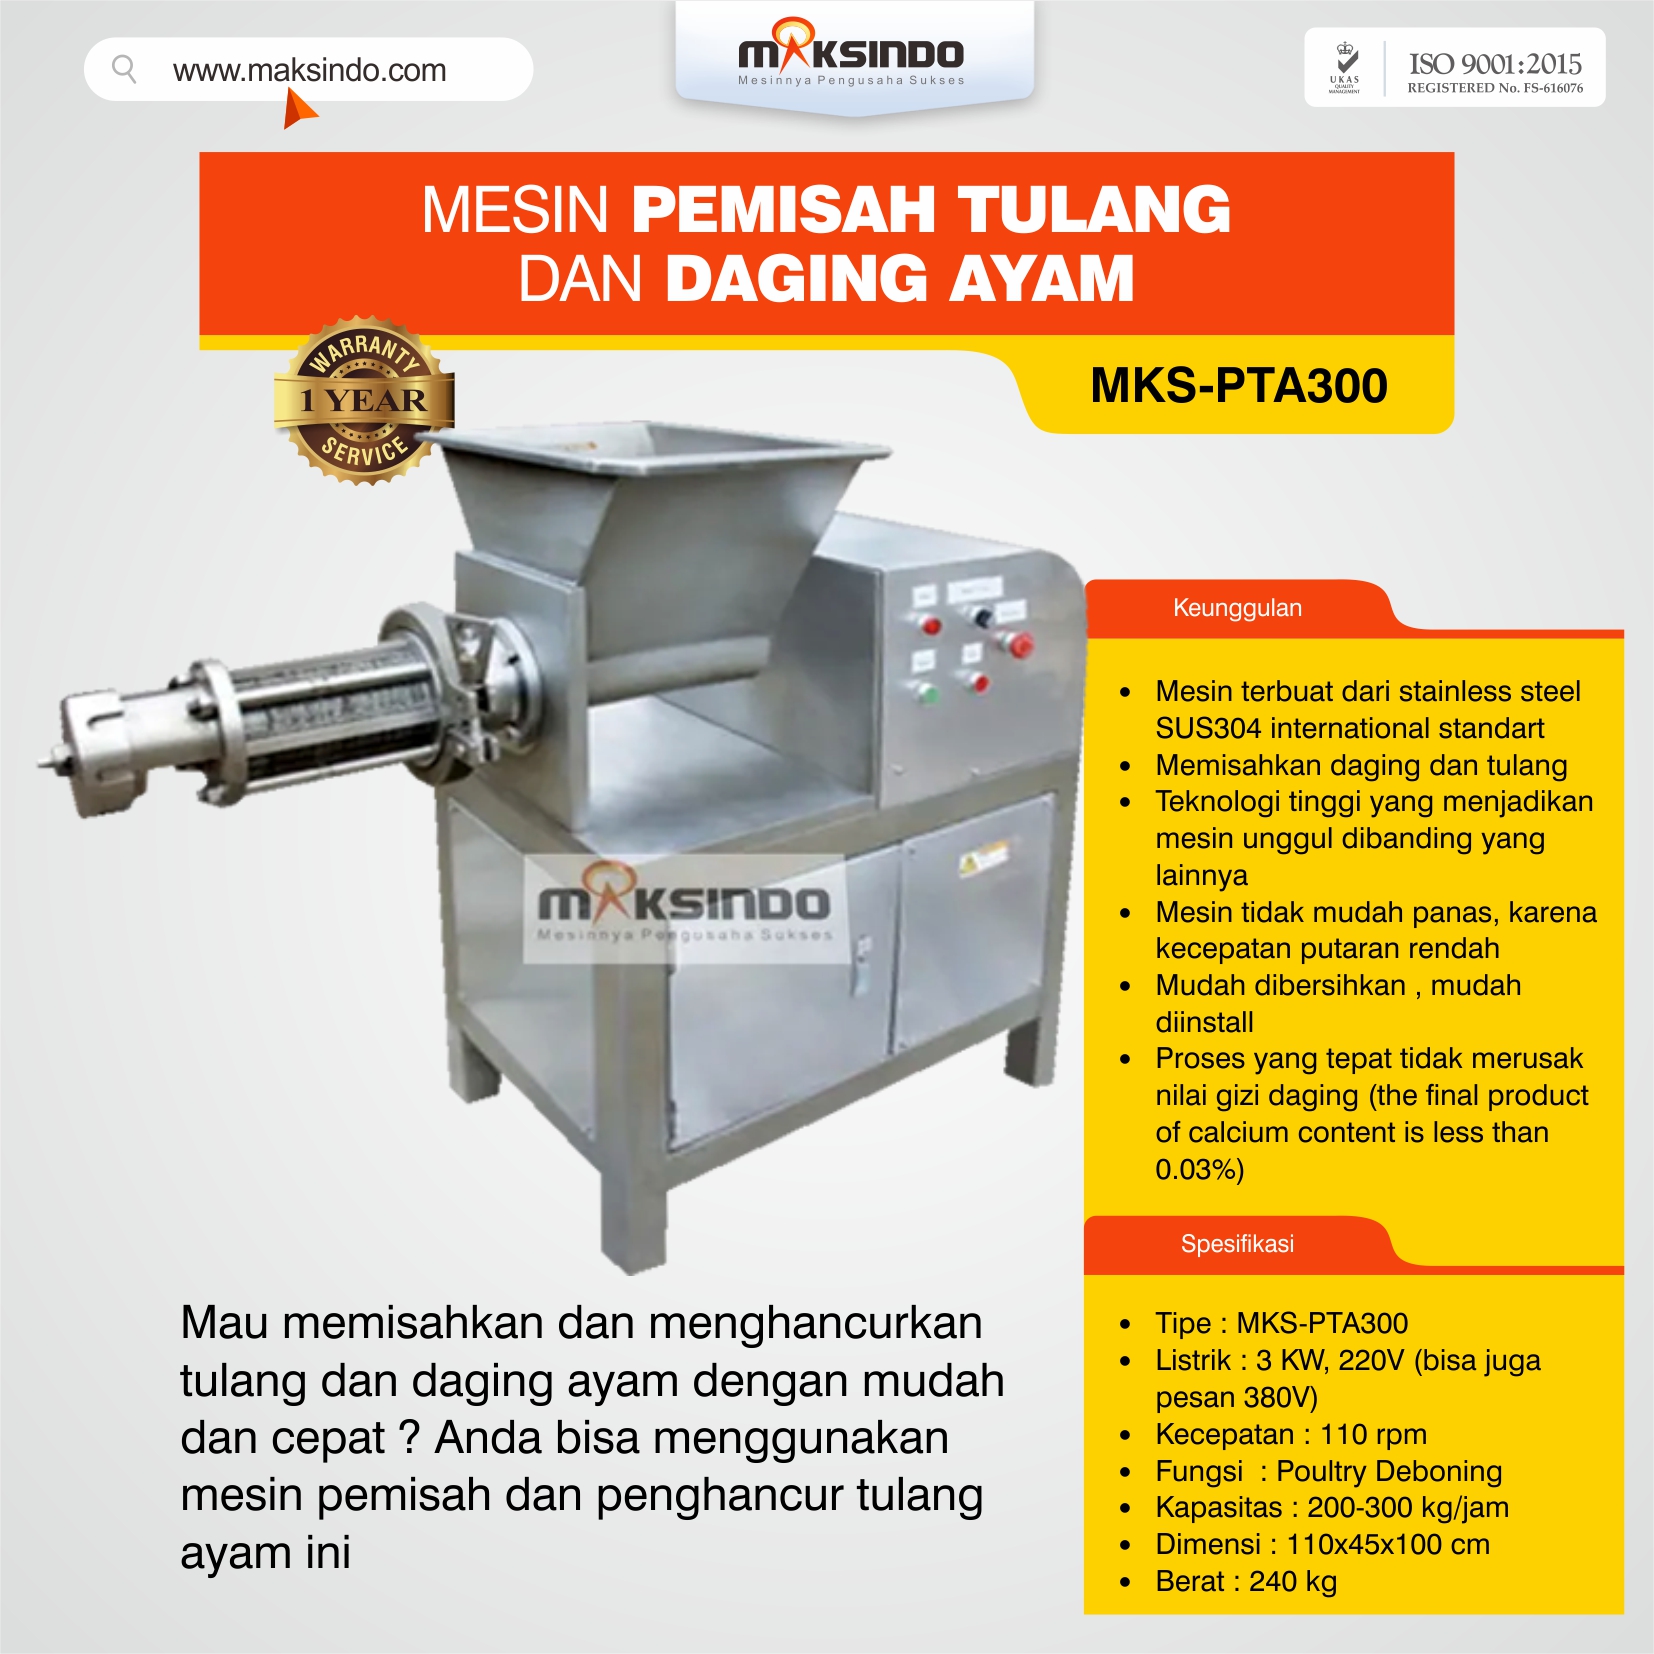 Jual Pemisah Tulang Dan Daging Ayam PTA-300 di Semarang